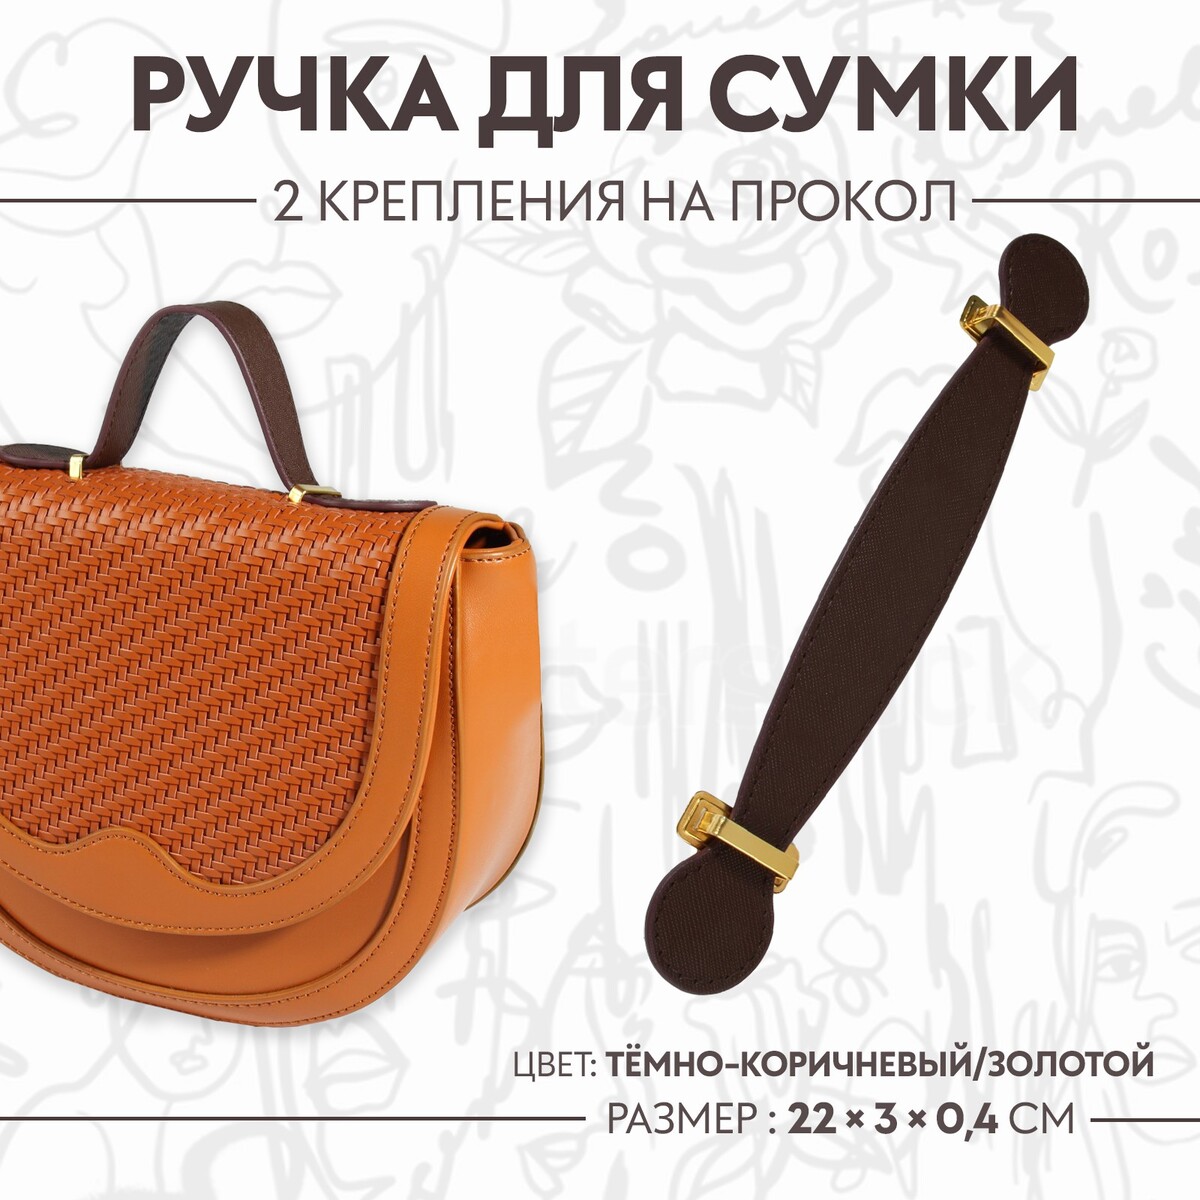 Ручка для сумки, 2 крепления на прокол, 22 × 3 × 0,4 см, цвет темно-коричневый/золотой ручка рейлинг cappio м о 96 мм коричневый